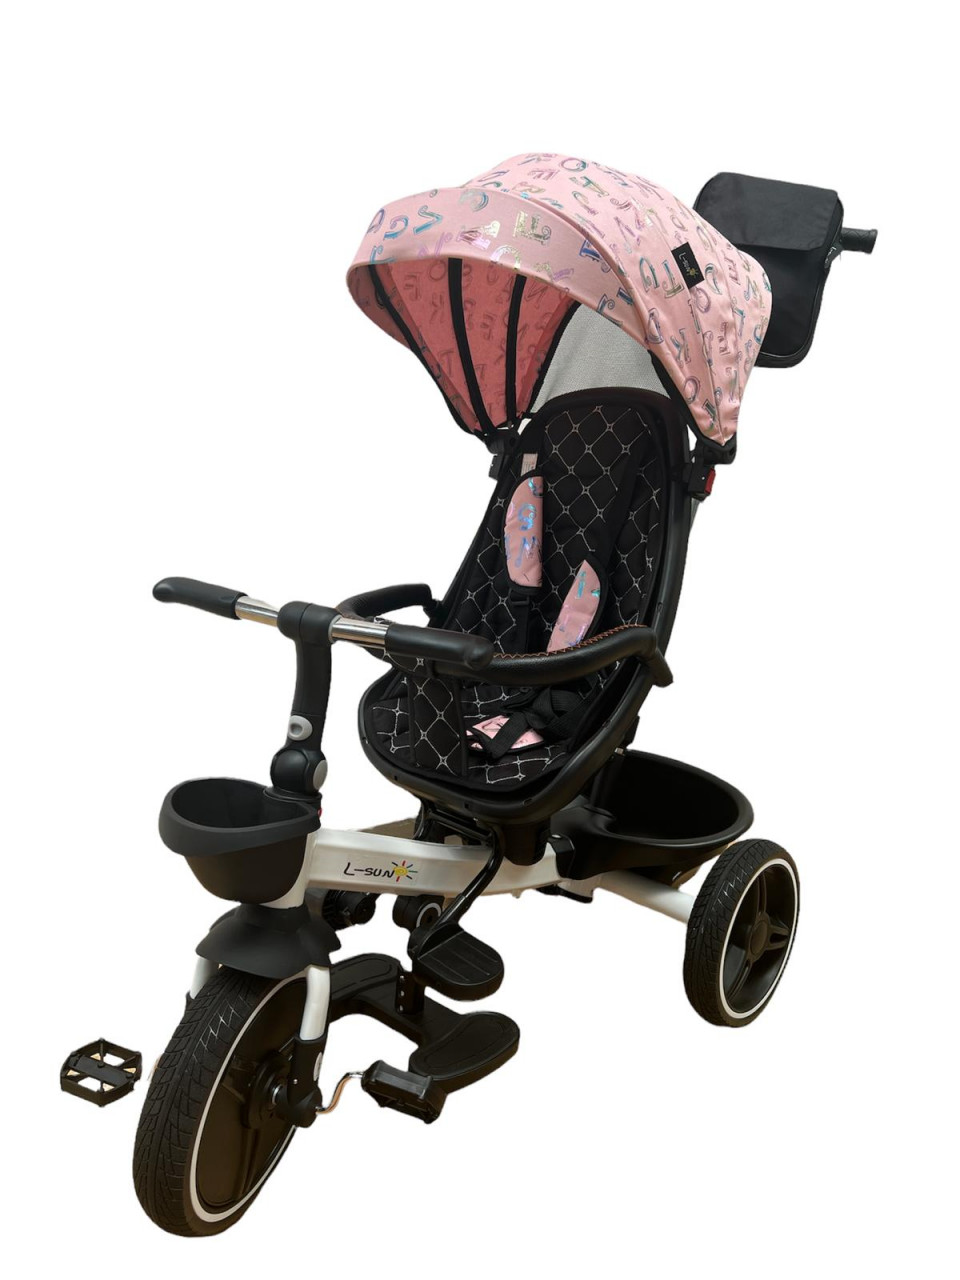 scaun auto copii cu pozitie de somn Tricicleta pliabila cu scaun reversibil si pozitie de somn, Roz cu litere, TMR-44-roz